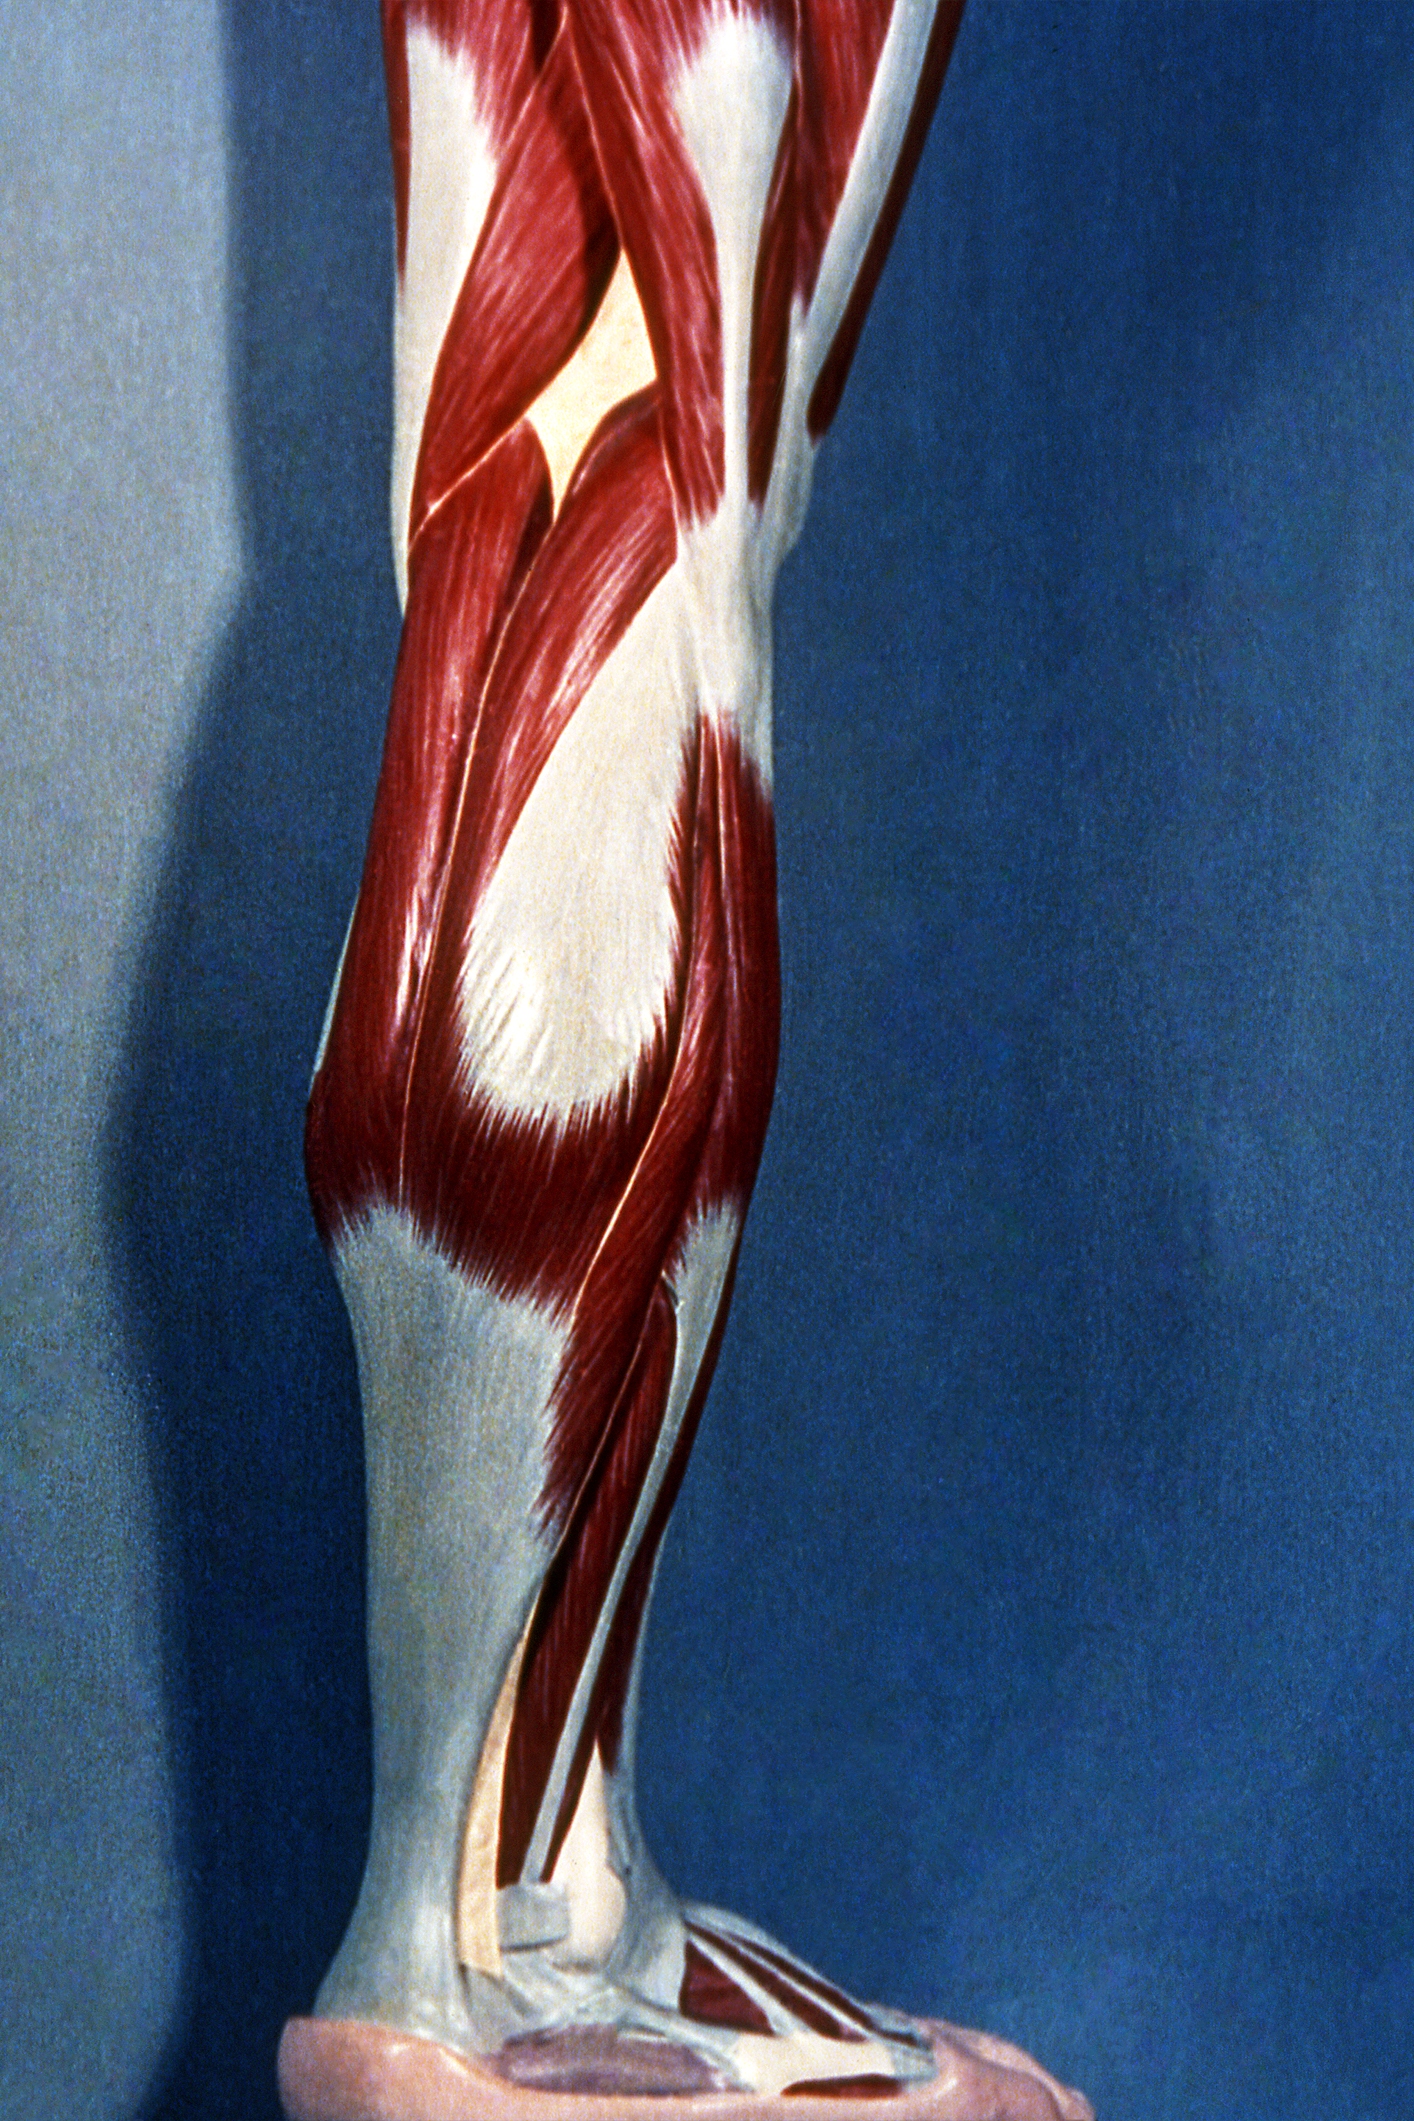 Músculo de la pierna. Visión lateral.